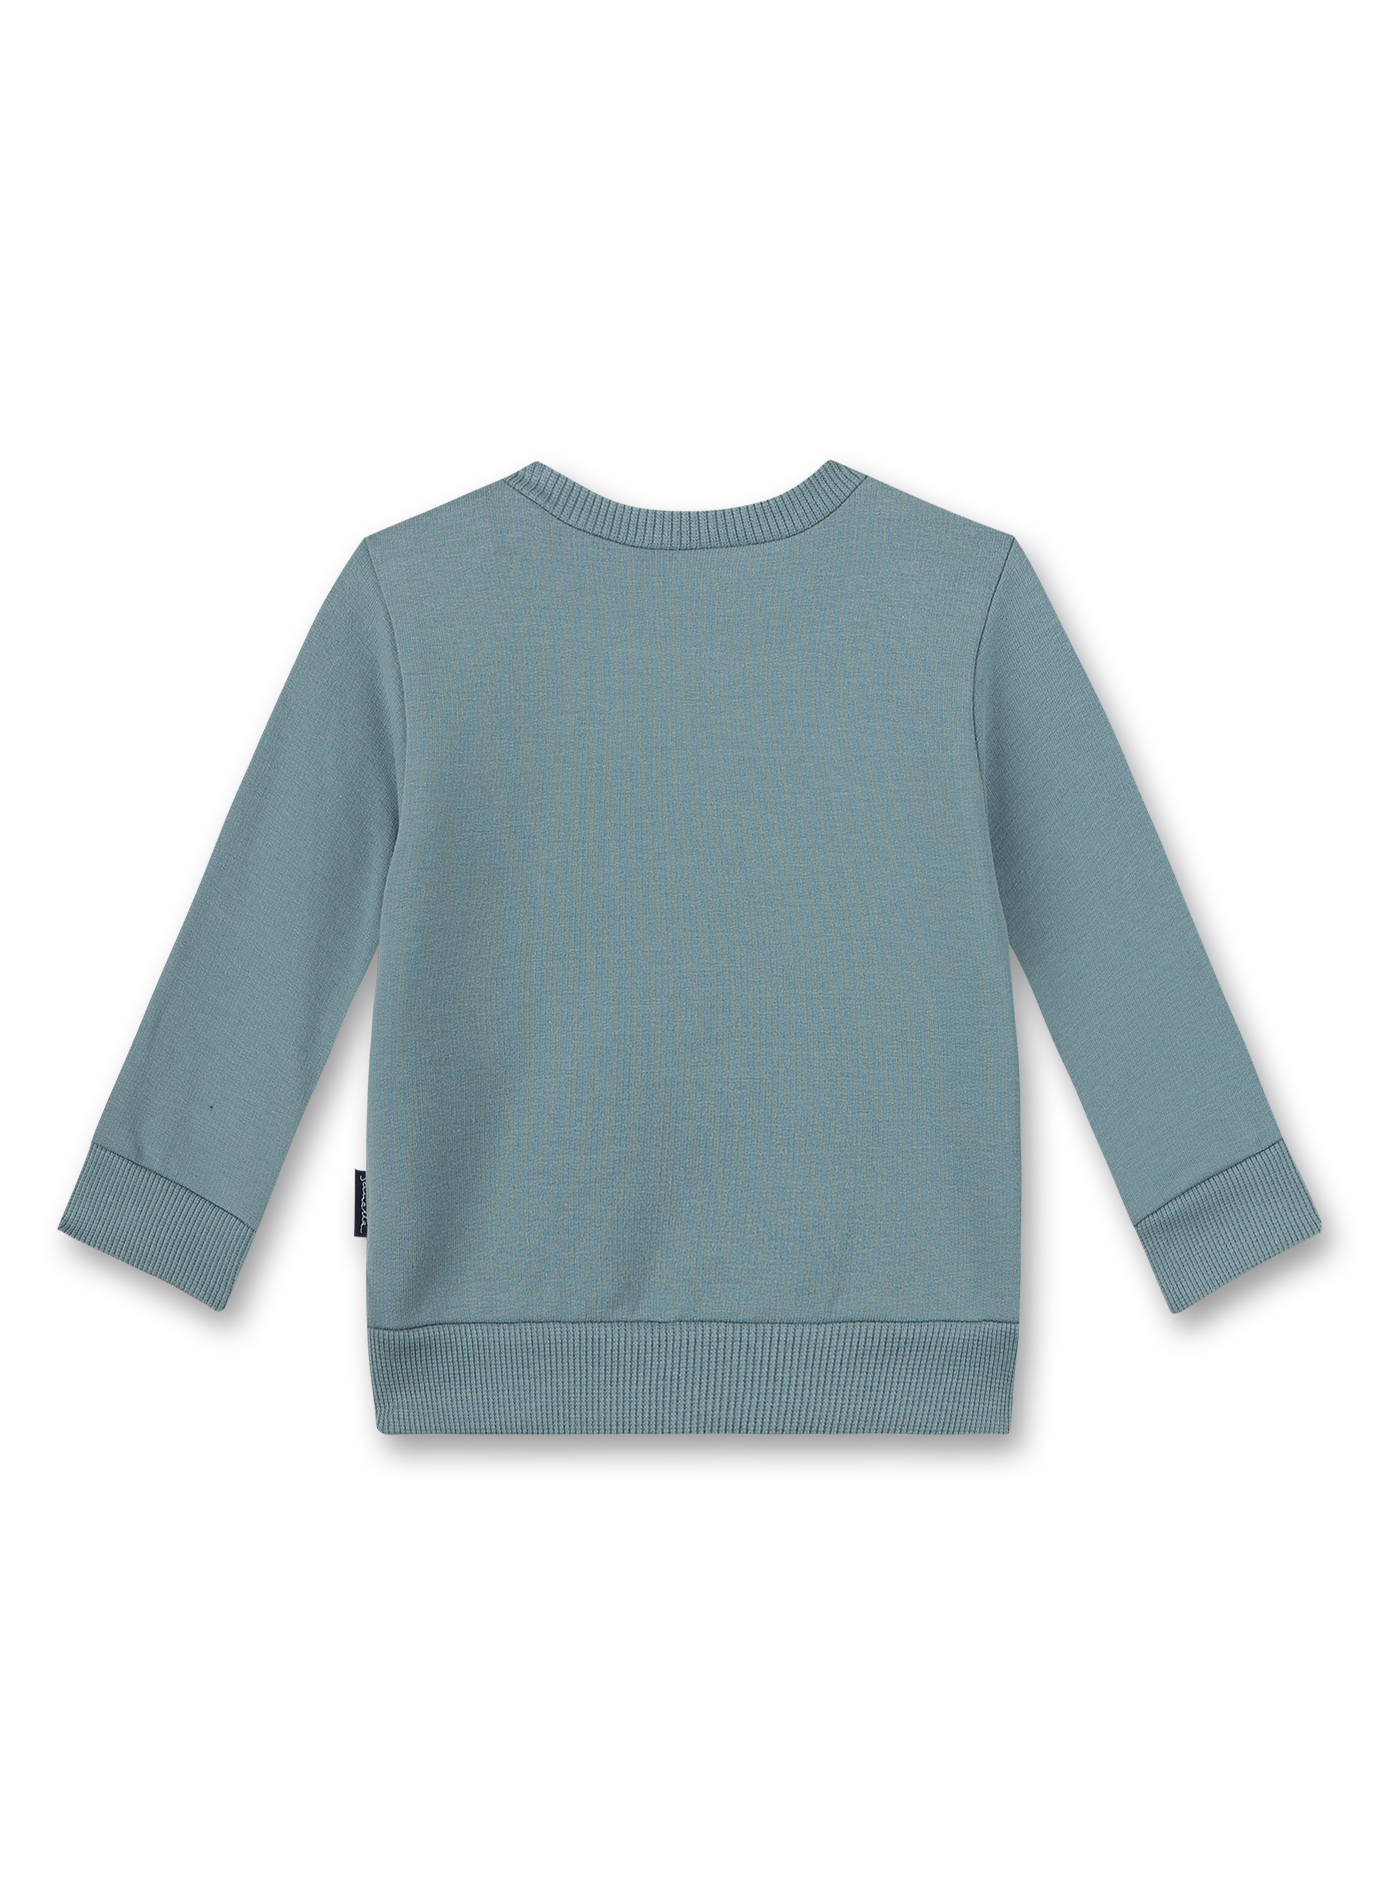 Jungen-Sweatshirt Blau Turtle